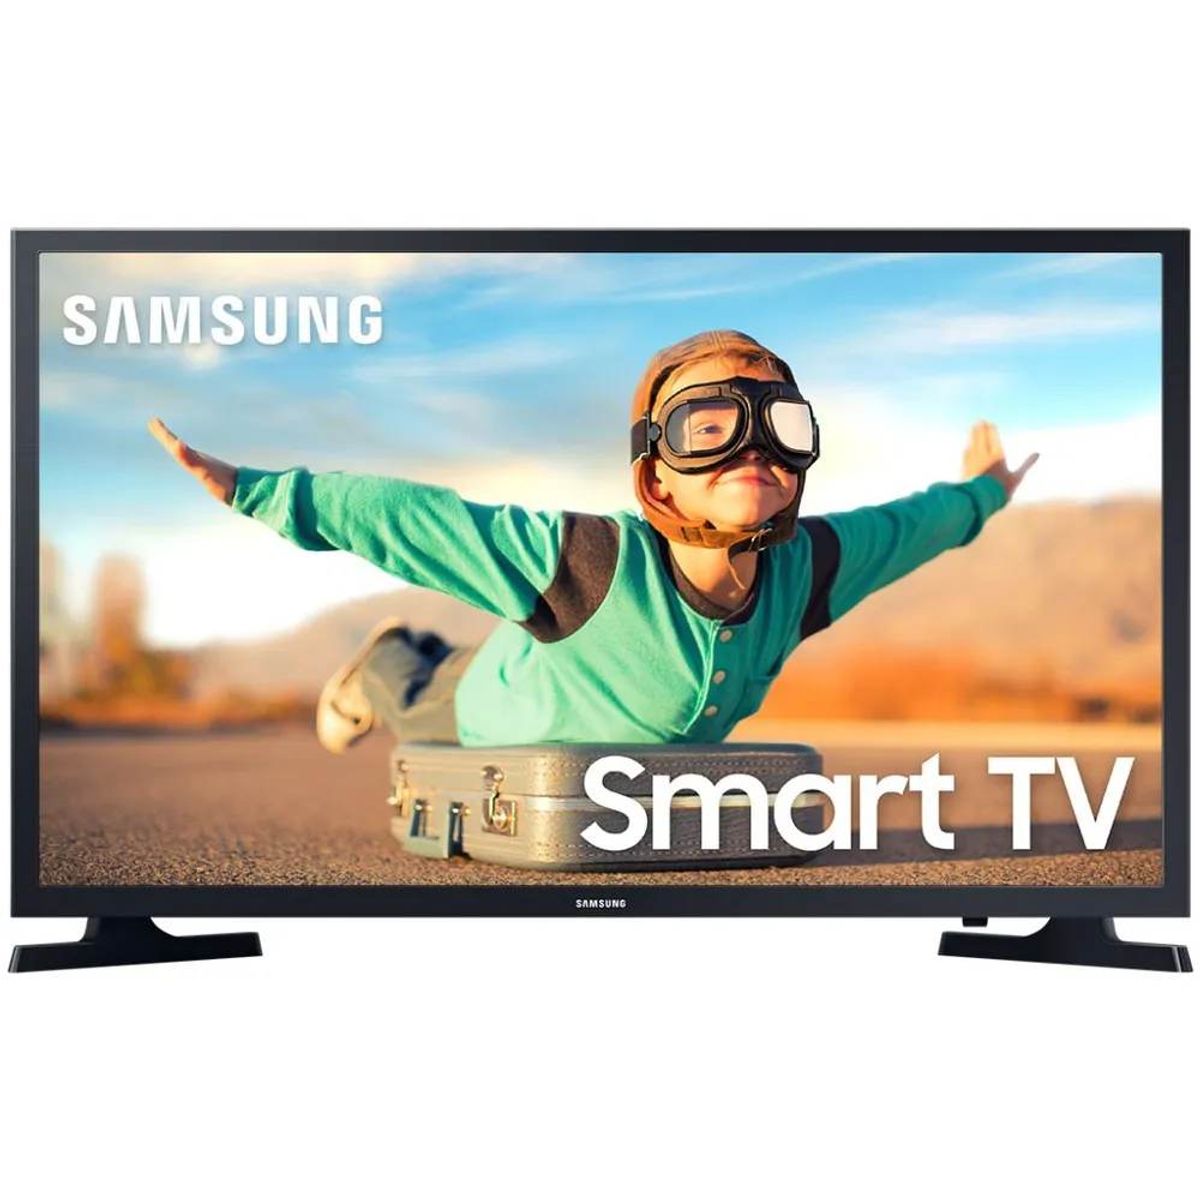 Smart Tv 32 LED Samsung 32T4300 Plataforma Tizen 2 HDMI 1 USB HD-WI-FI